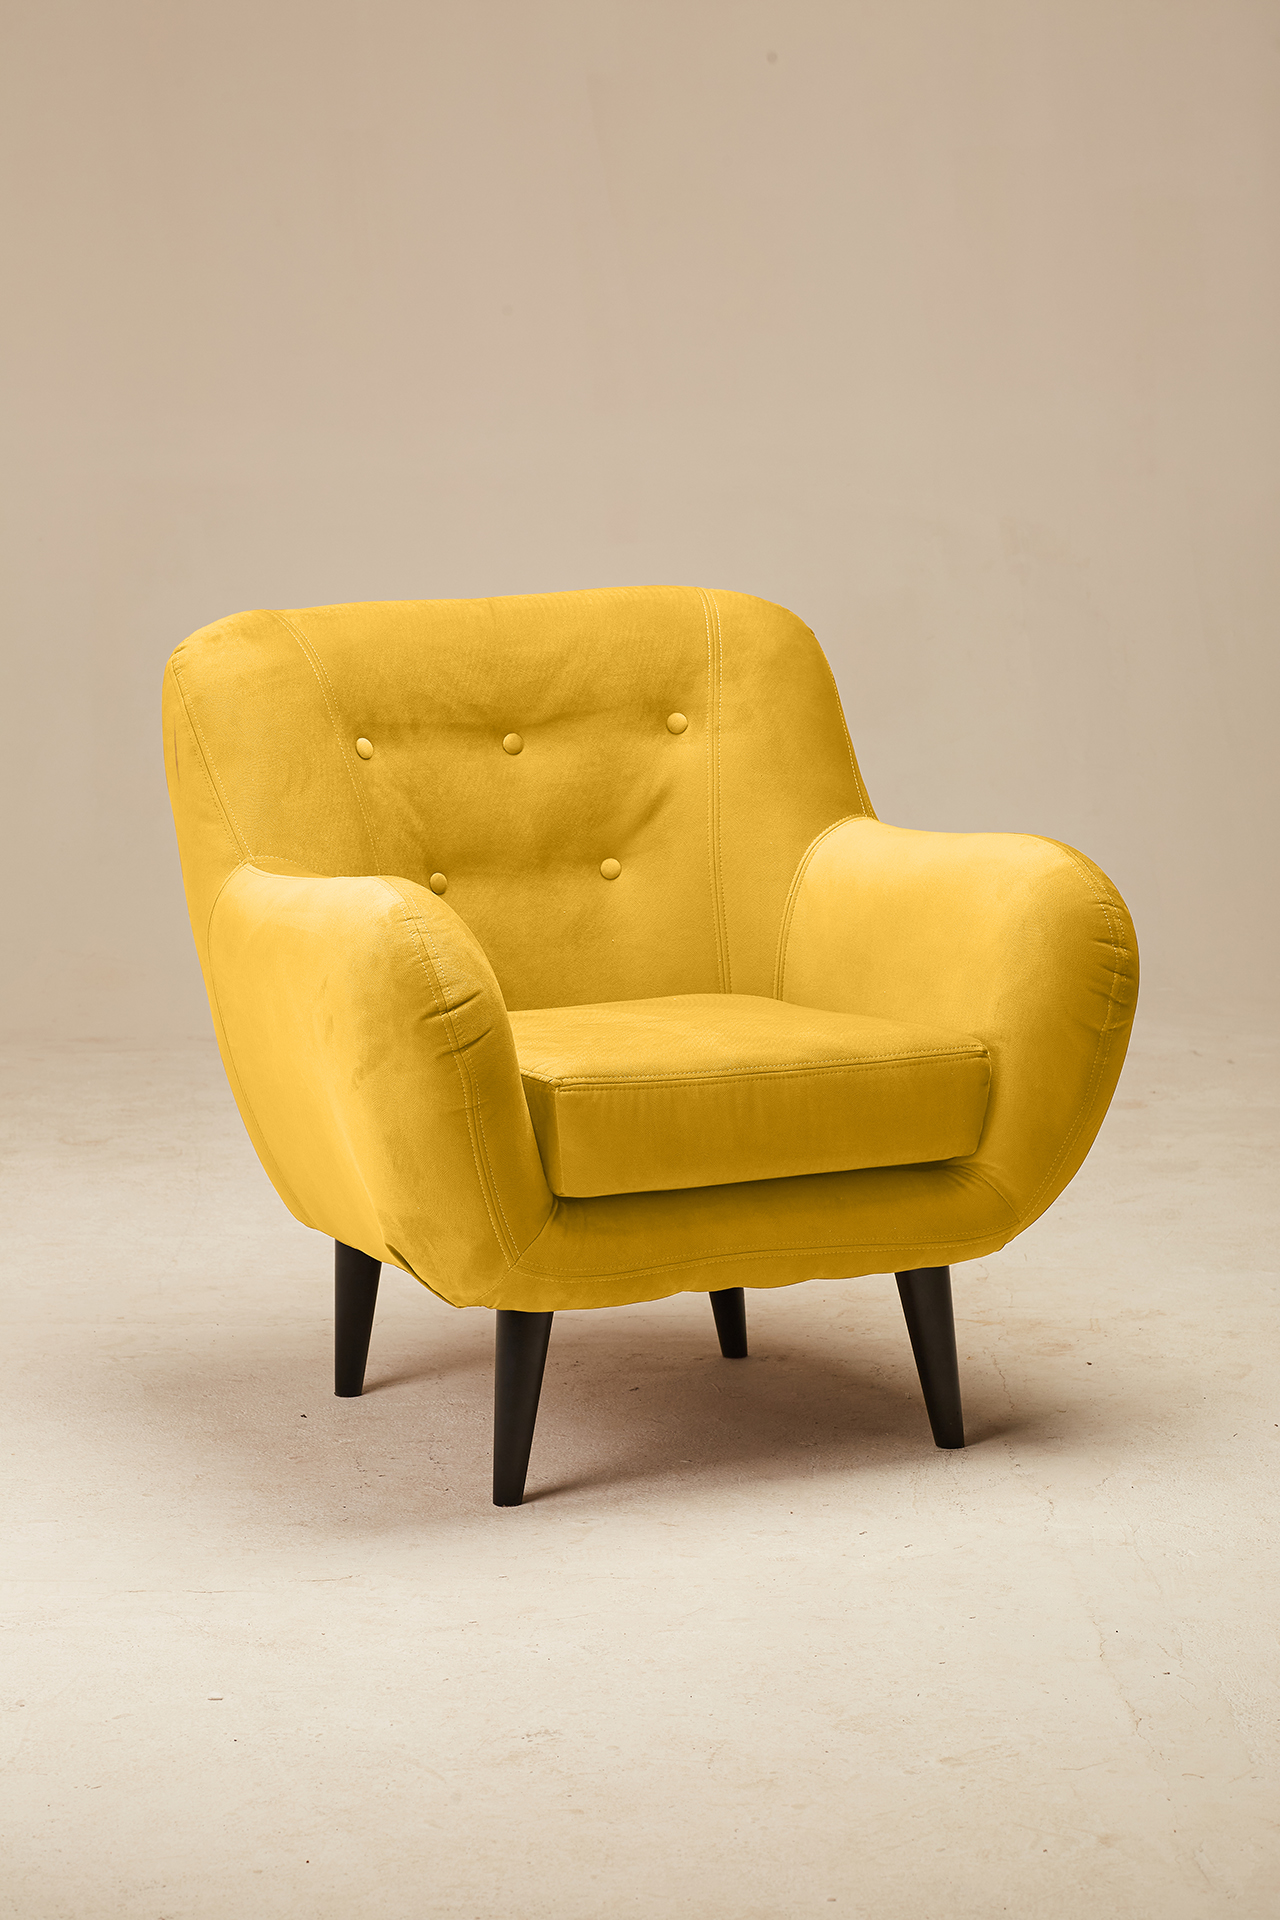 Мебельтодор. Желтое кресло. Кресло собака Дюна.